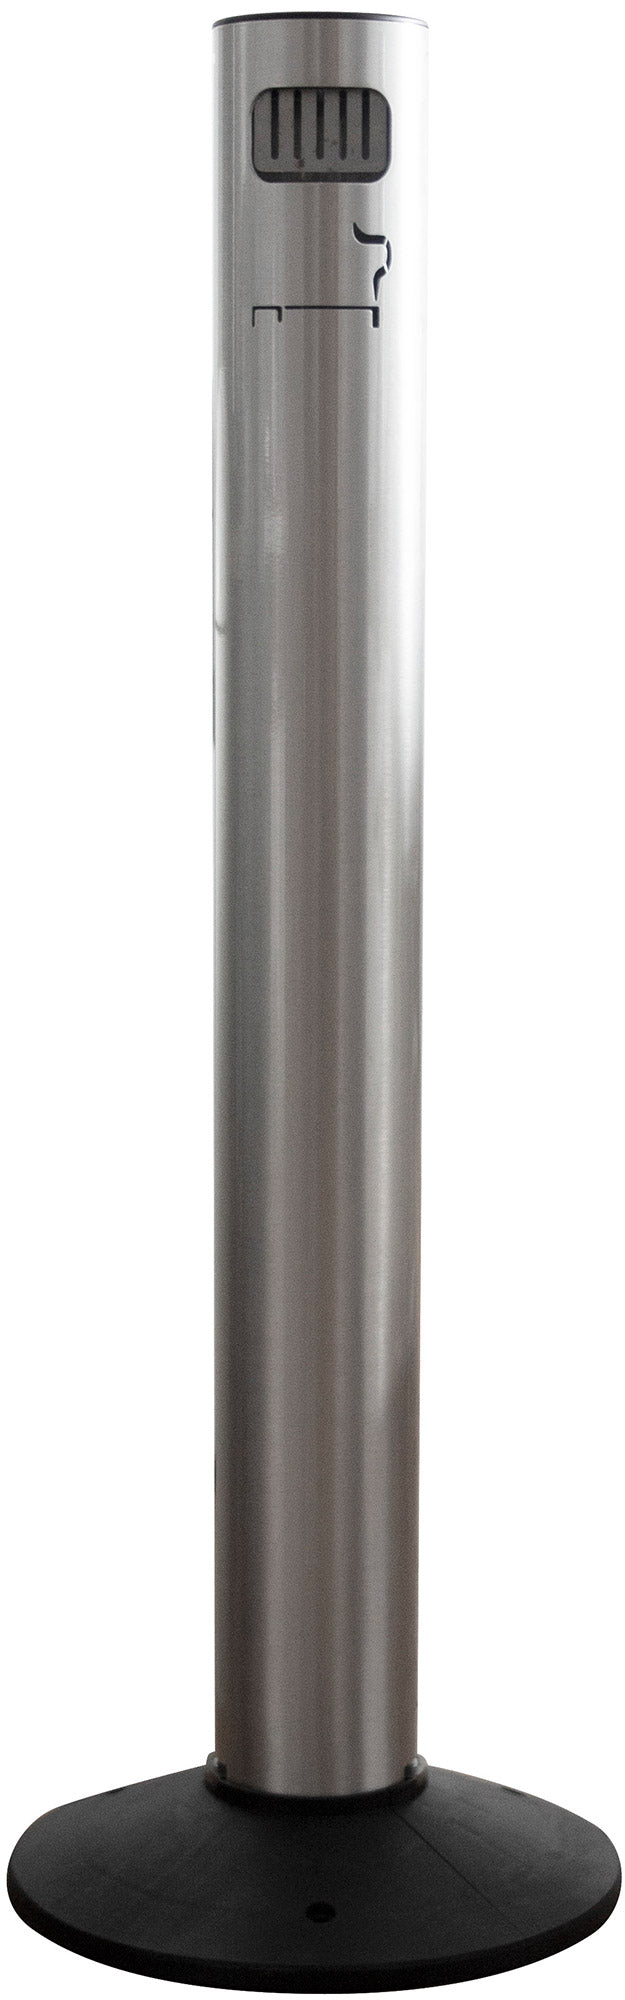 Posacenere a Colonna Ø11,7xh105 cm in Alluminio con Contenitore Interno  Argento – acquista su Giordano Shop